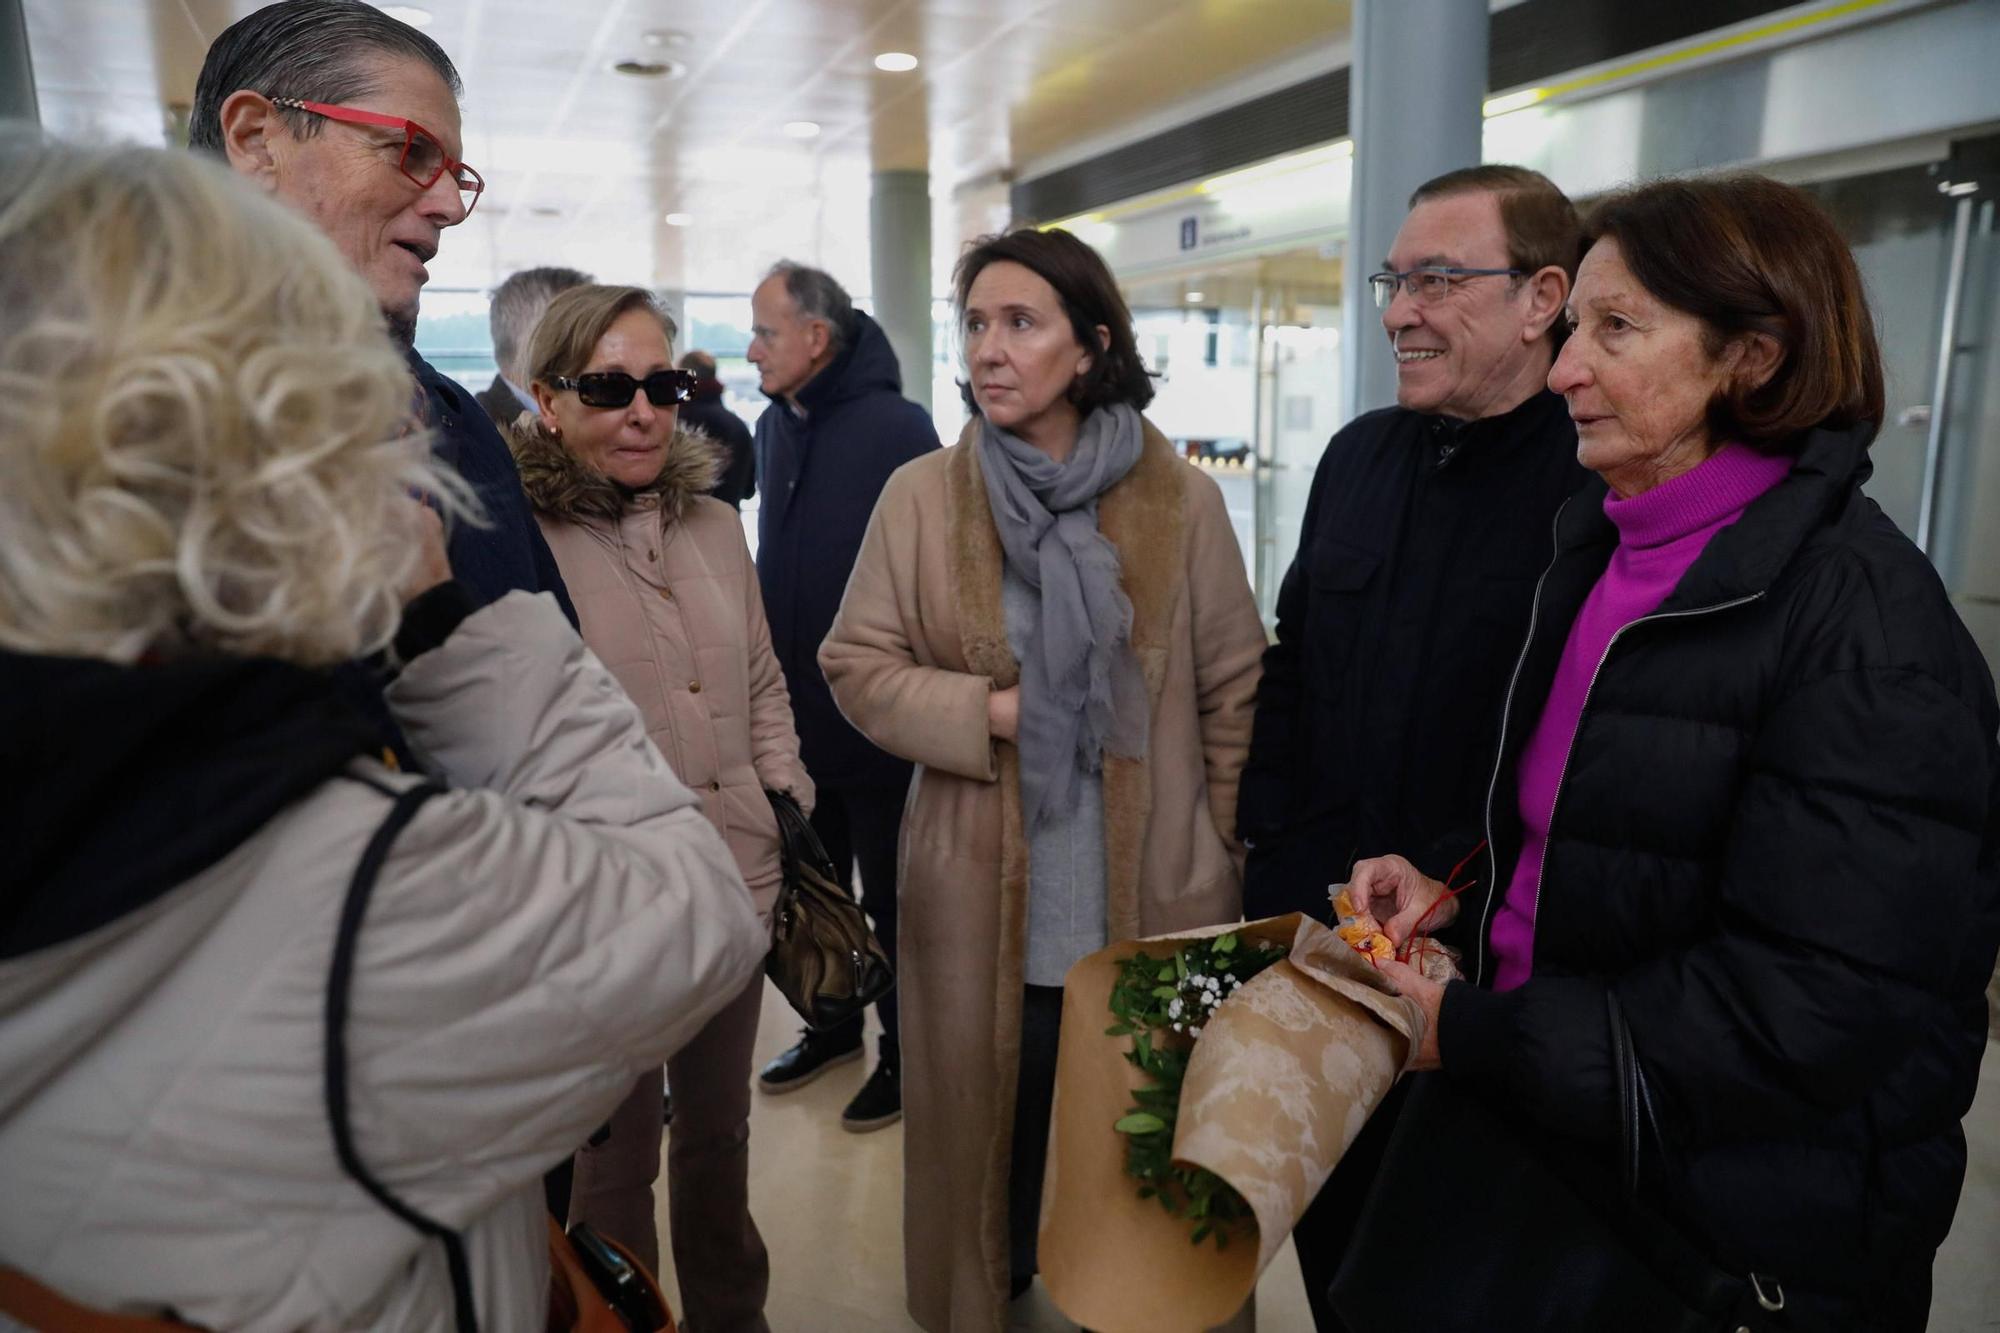 EN IMÁGENES: Así ha sido el homenaje a Angelín el de Iberia en el Aeropuerto de Asturias